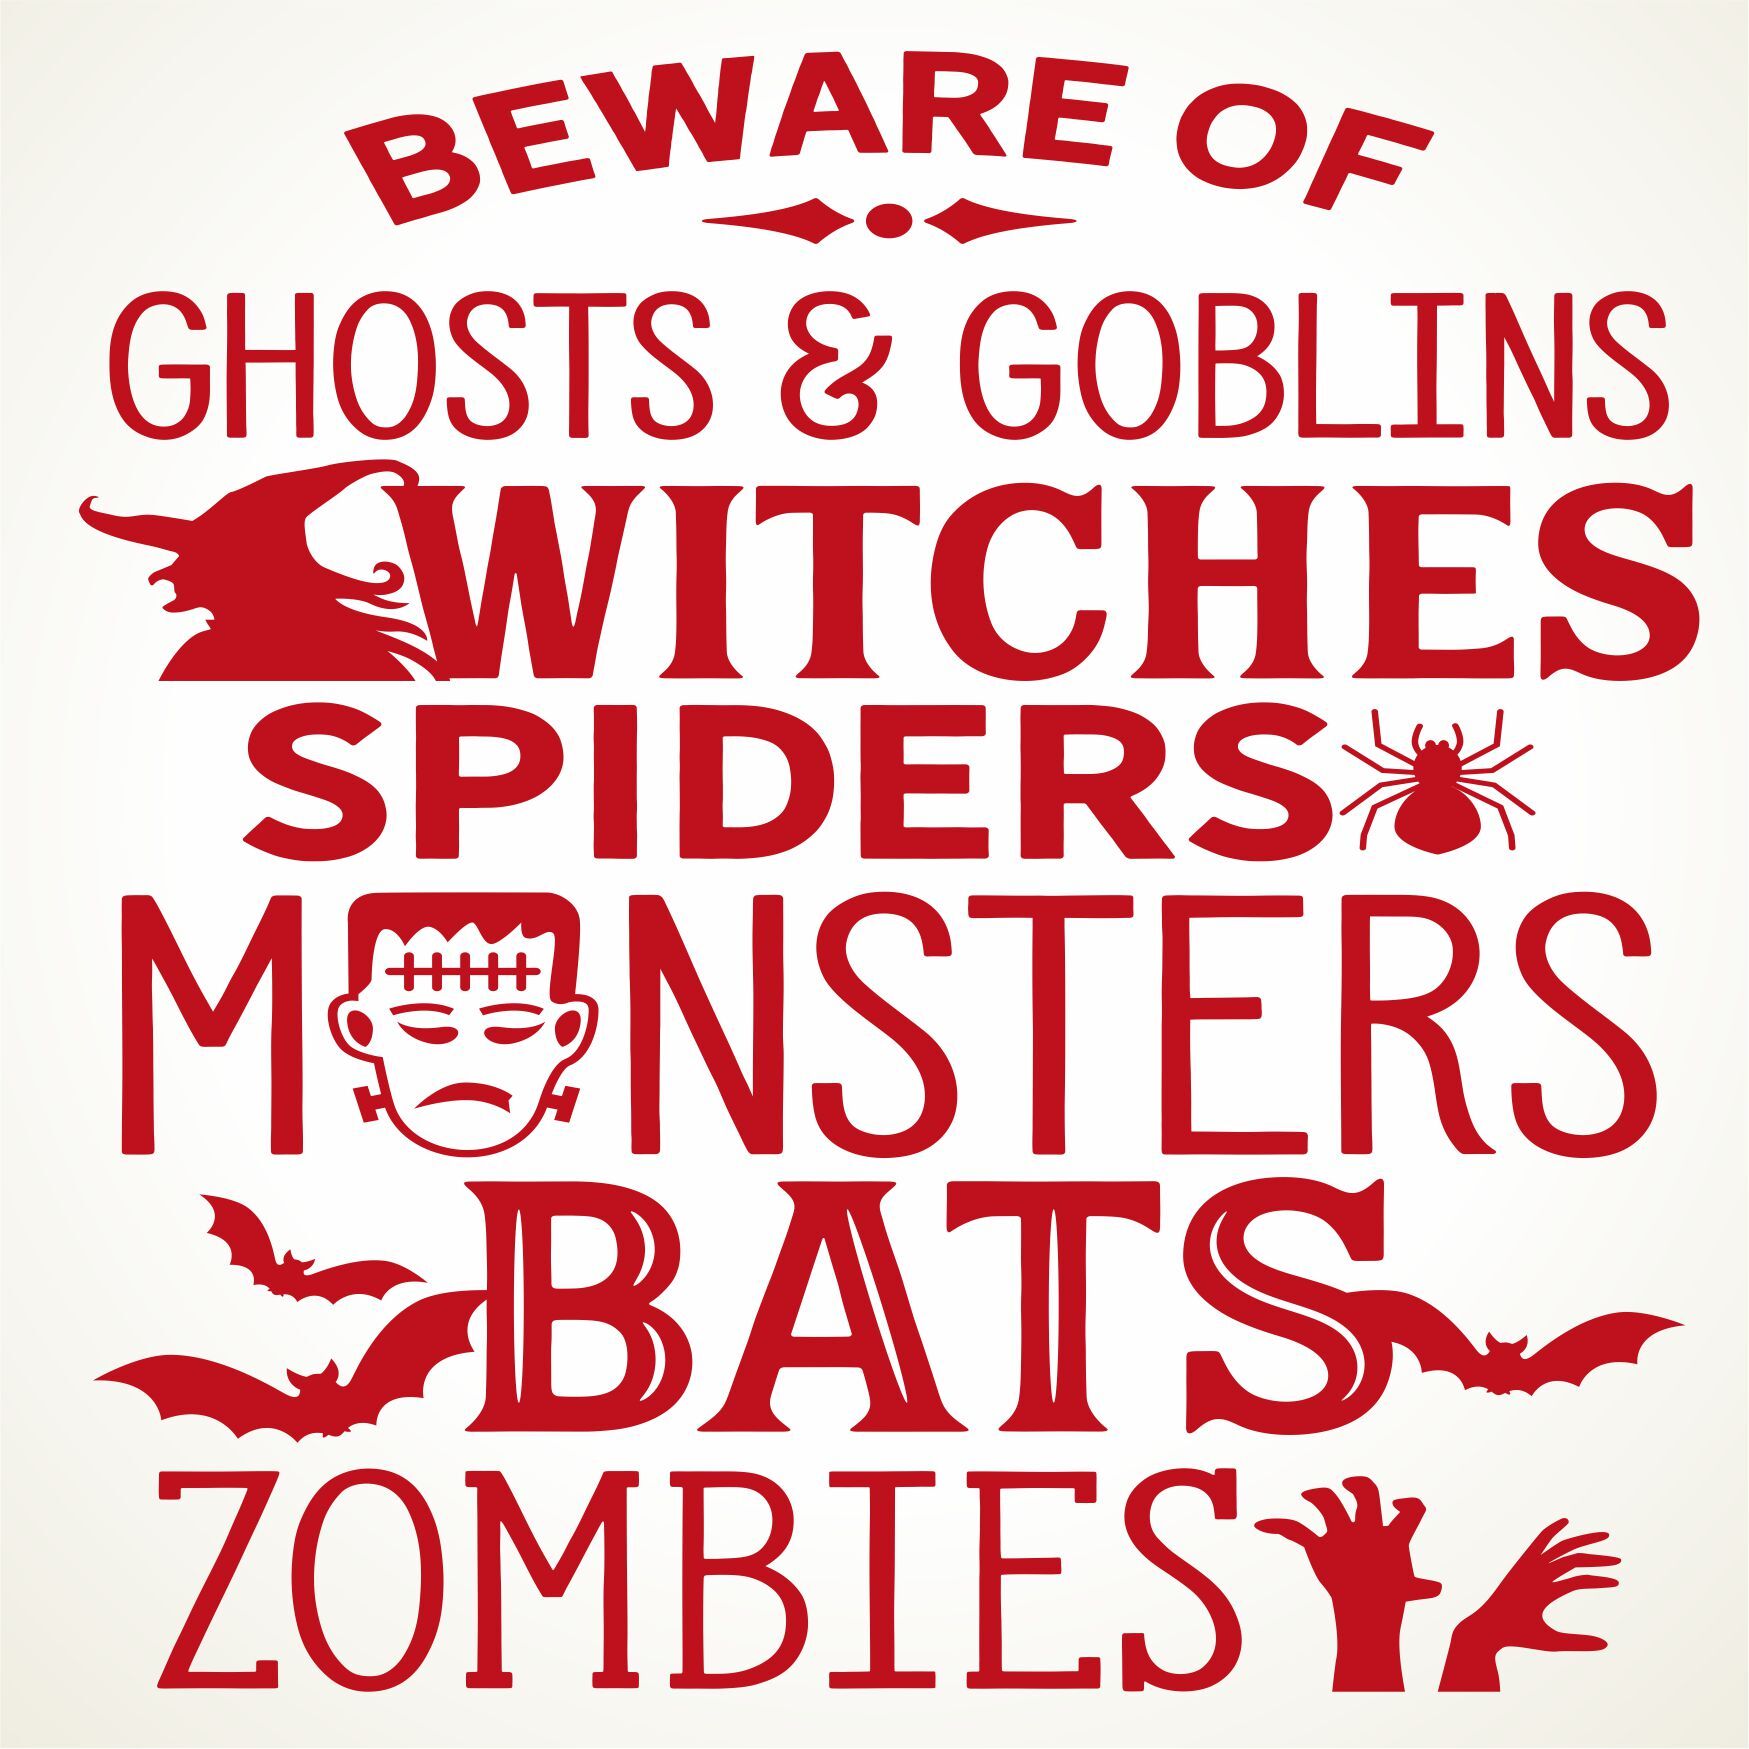 Tegeltje voor Halloween beware of ghosts gobling witches spiders monsters bats zombies